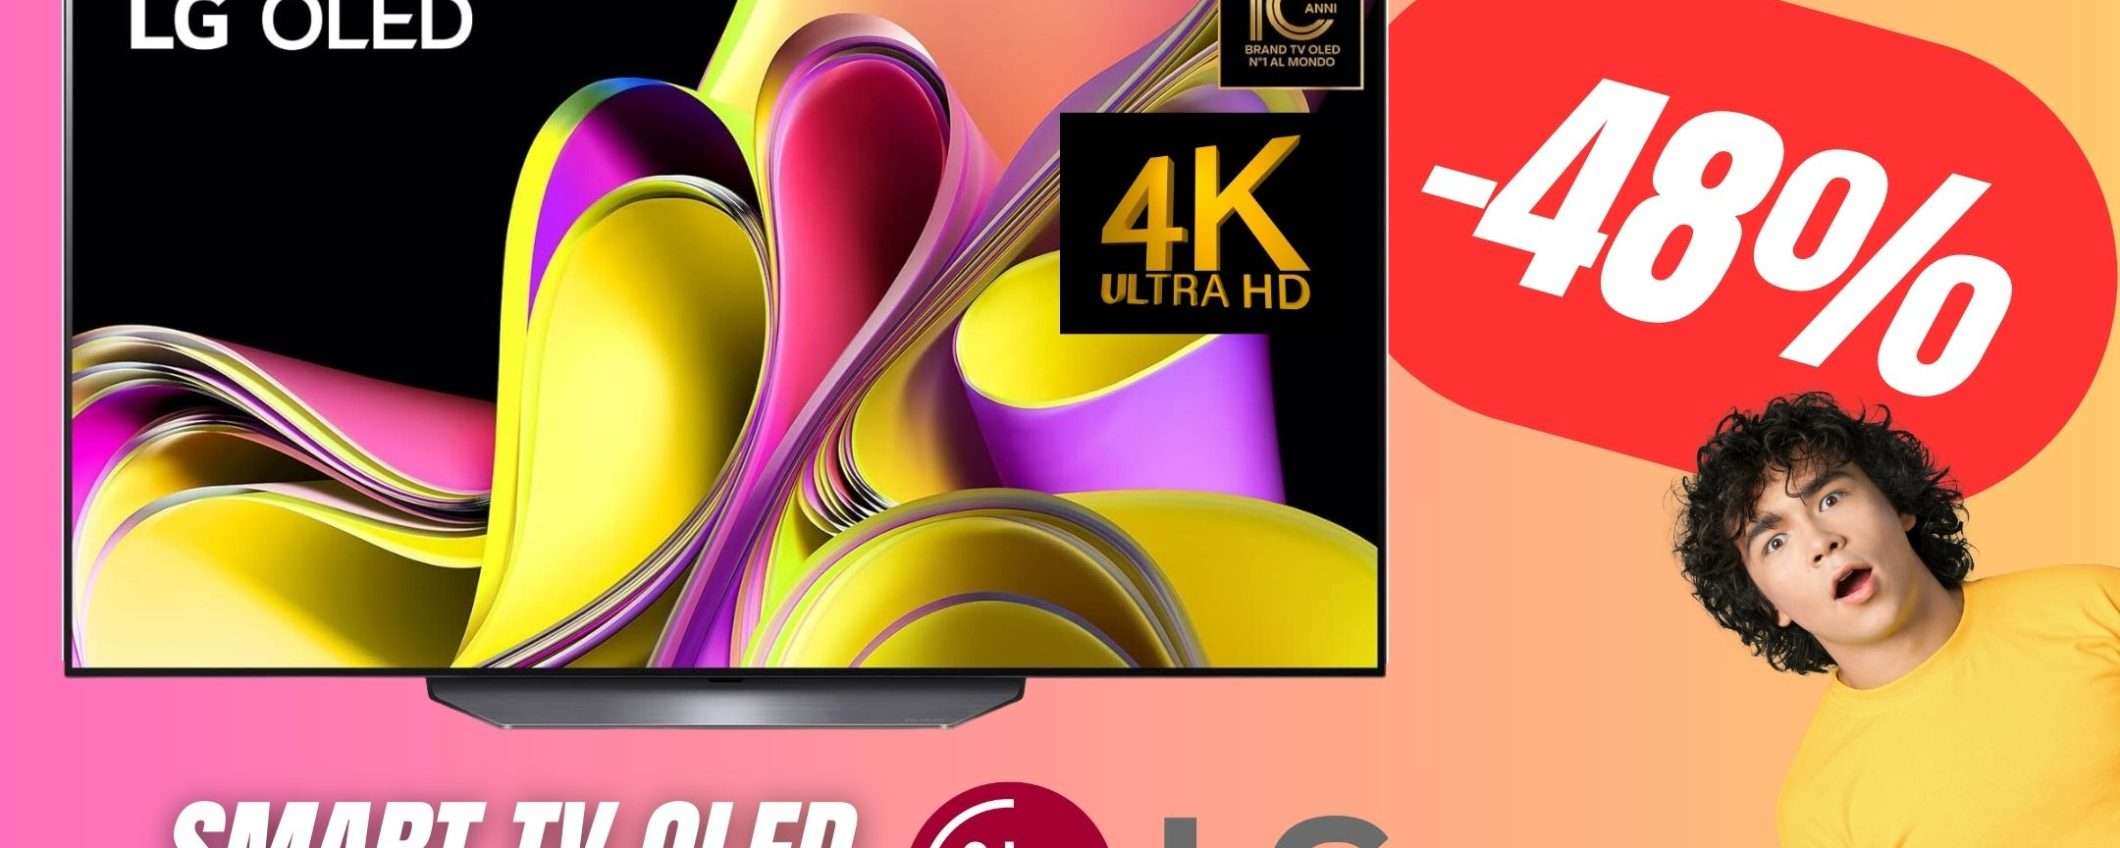 Questa TV OLED di LG 4K crolla del -48%: uno SCONTO PAZZESCO